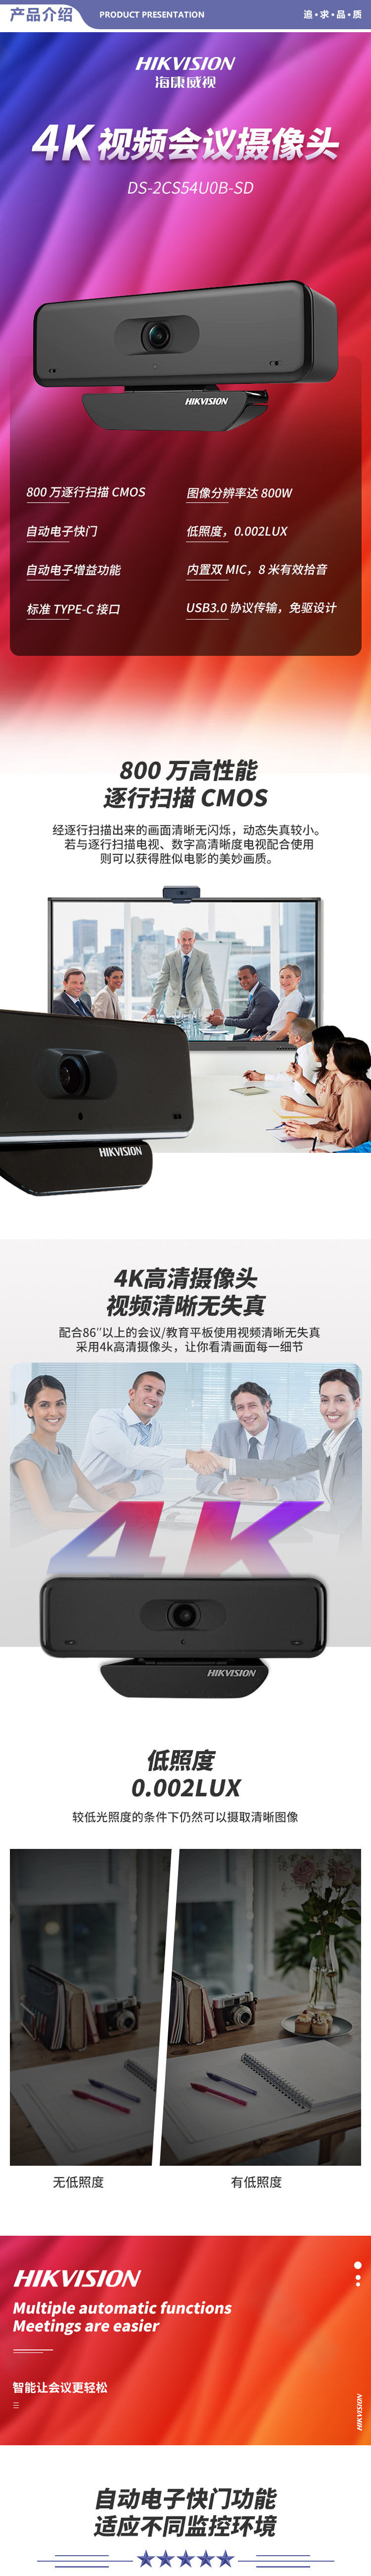 海康威视 2CS54U0B-S 会议摄像头800万4K超高清视频会议USB免驱 2.jpg